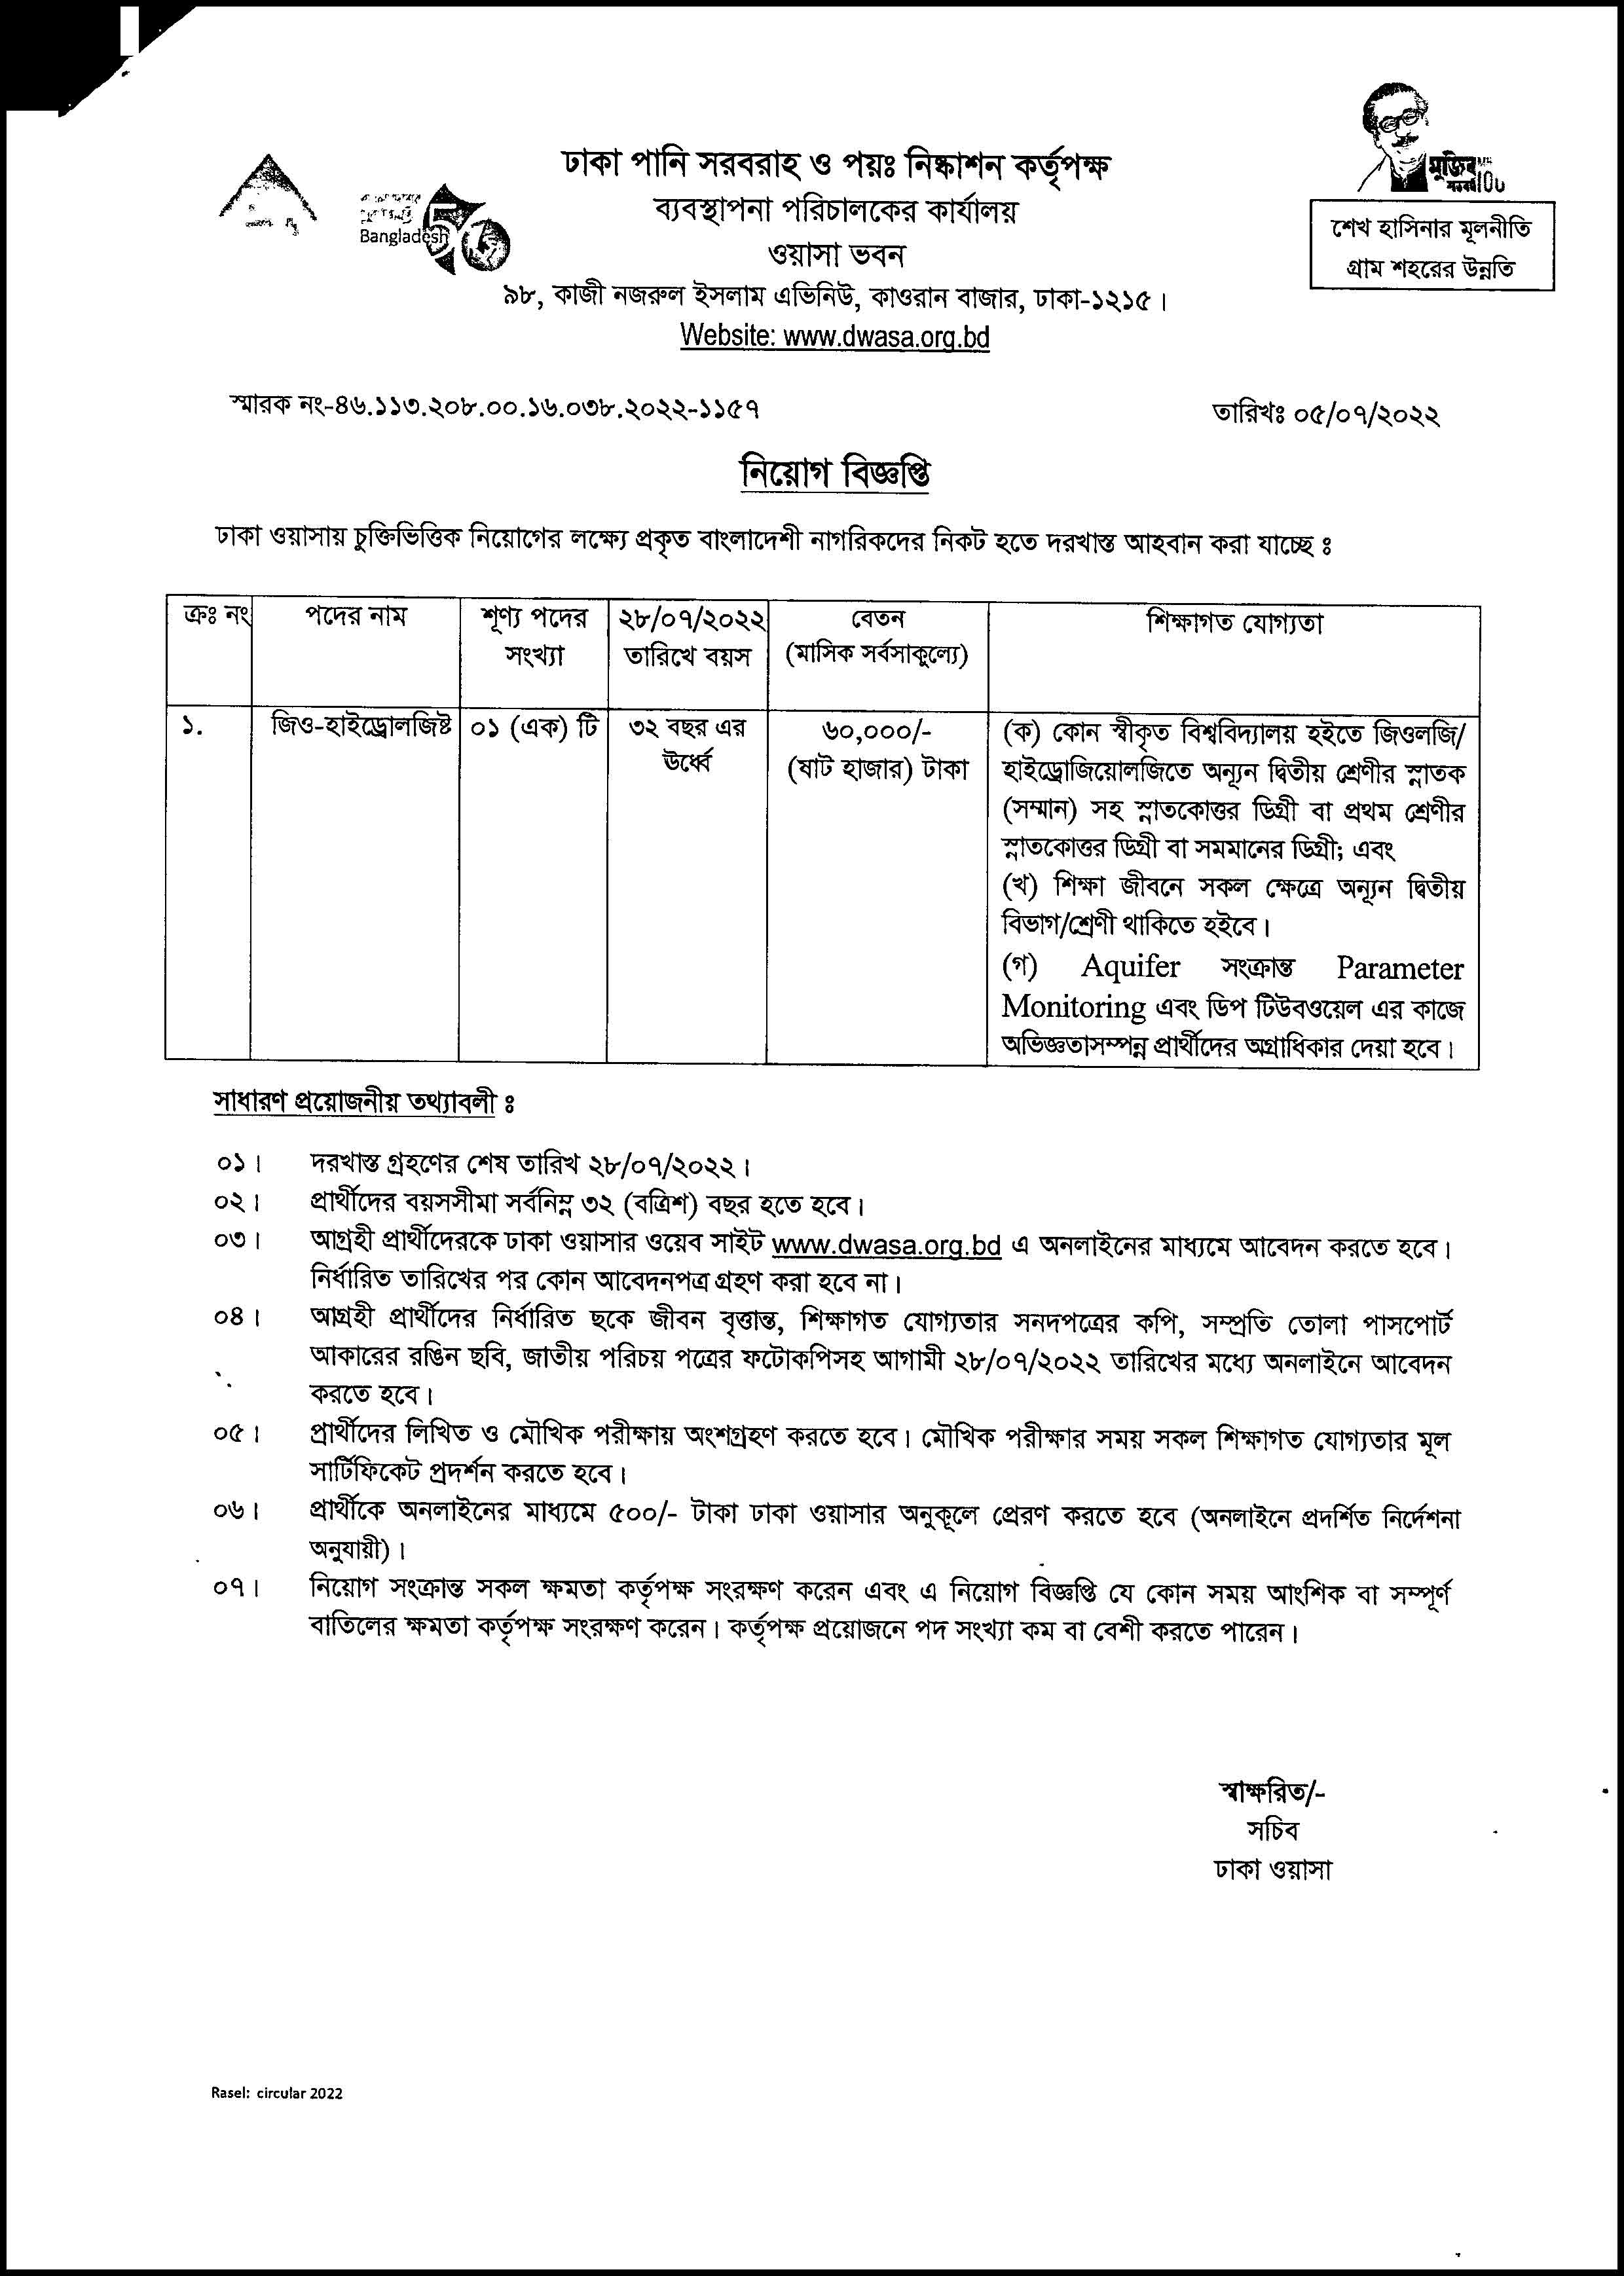 ৬০ হাজার টাকা বেতনে ঢাকা ওয়াসায় নতুন নিয়োগ বিজ্ঞপ্তি জুলাই ২০২২ । Dhaka WASA new recruitment notification July 2022.